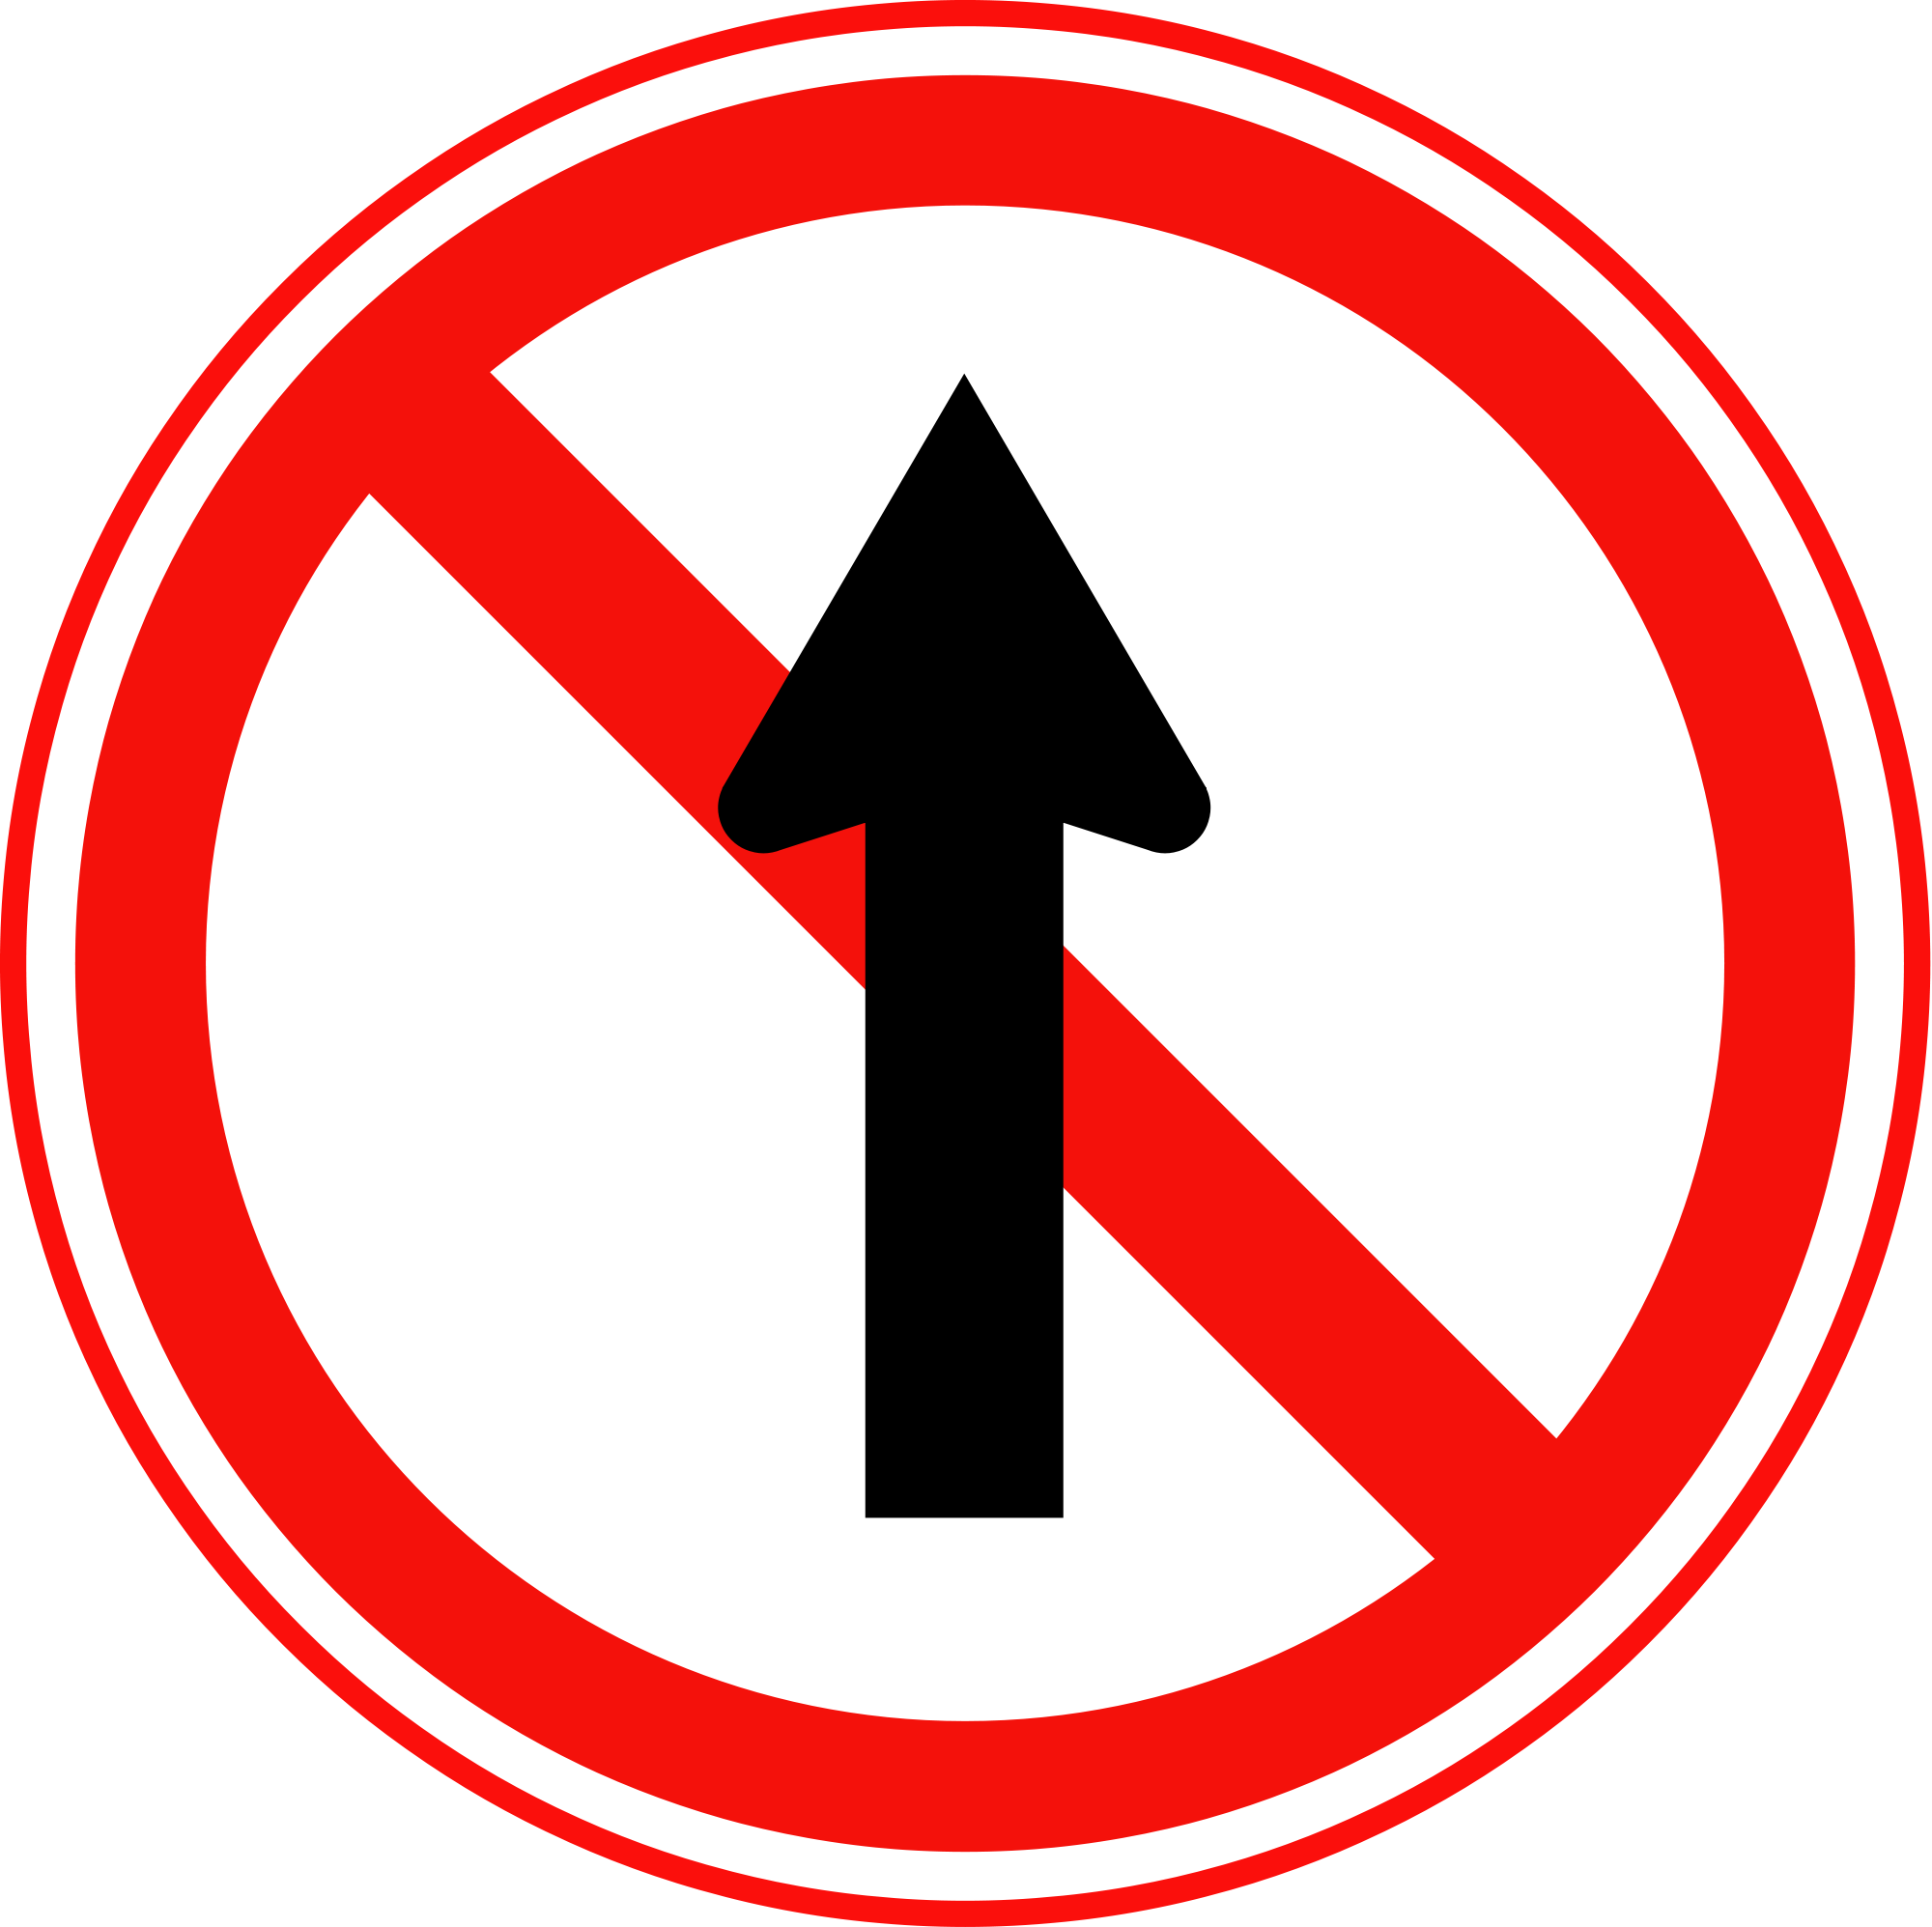 Знак кон. Дорожные знаки. Знак с перечеркнутыми стрелками. Дорожные знаки в высоком качестве. Перечеркнутая стрелка дорожный знак.